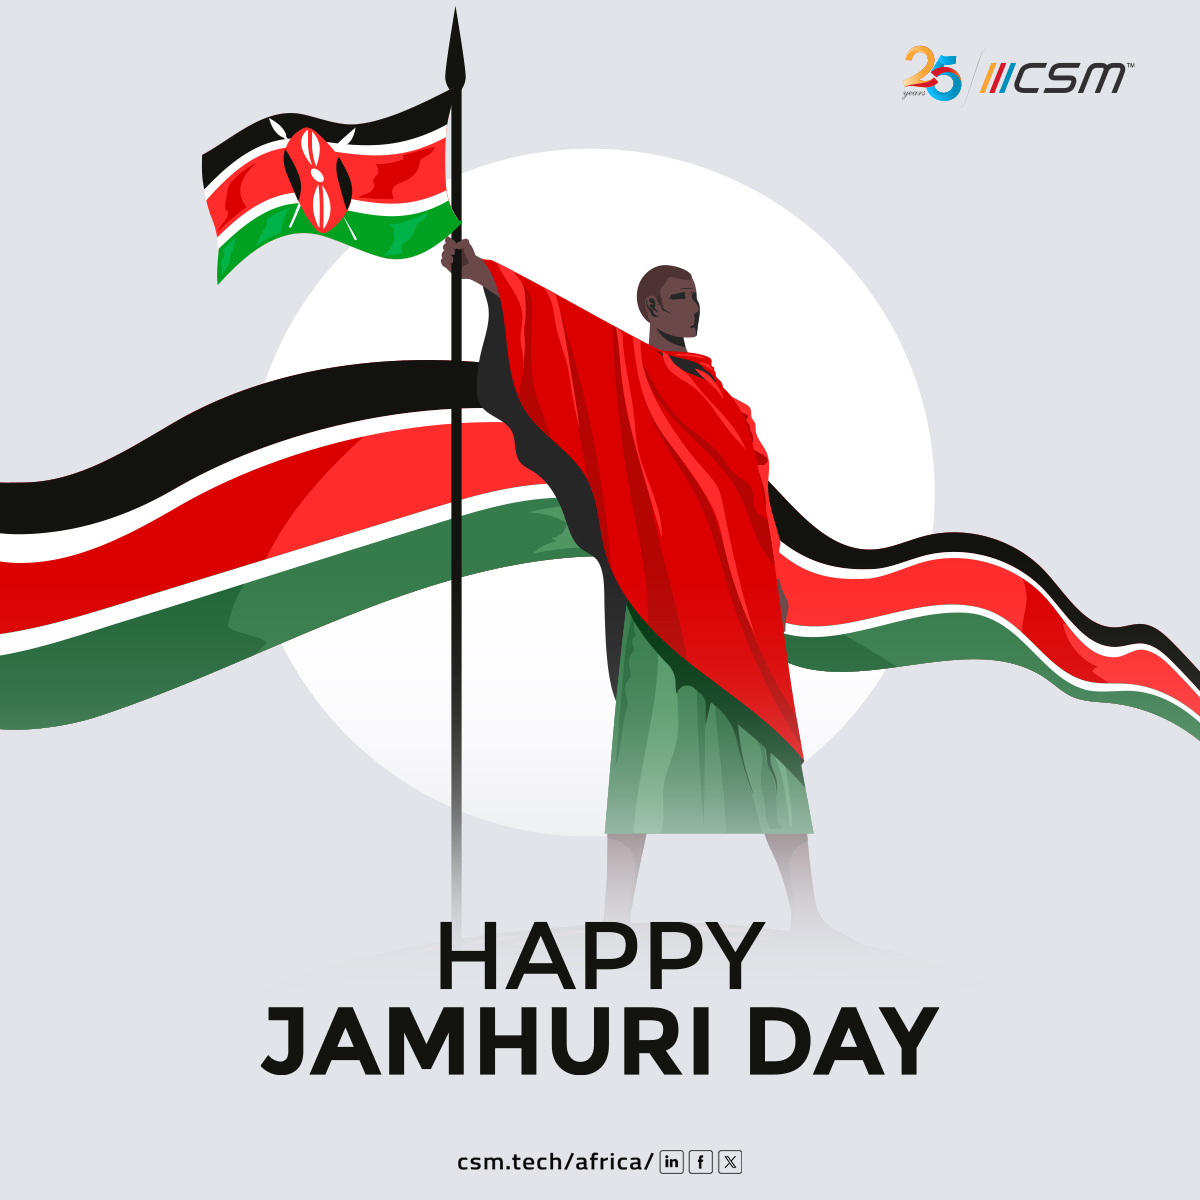 Wishing a joyous Jamhuri Day to all celebrating freedom, unity, and progress!

#CSMTech #CSMTechAfrica #JamhuriDay #KenyaIndependence #Kenya